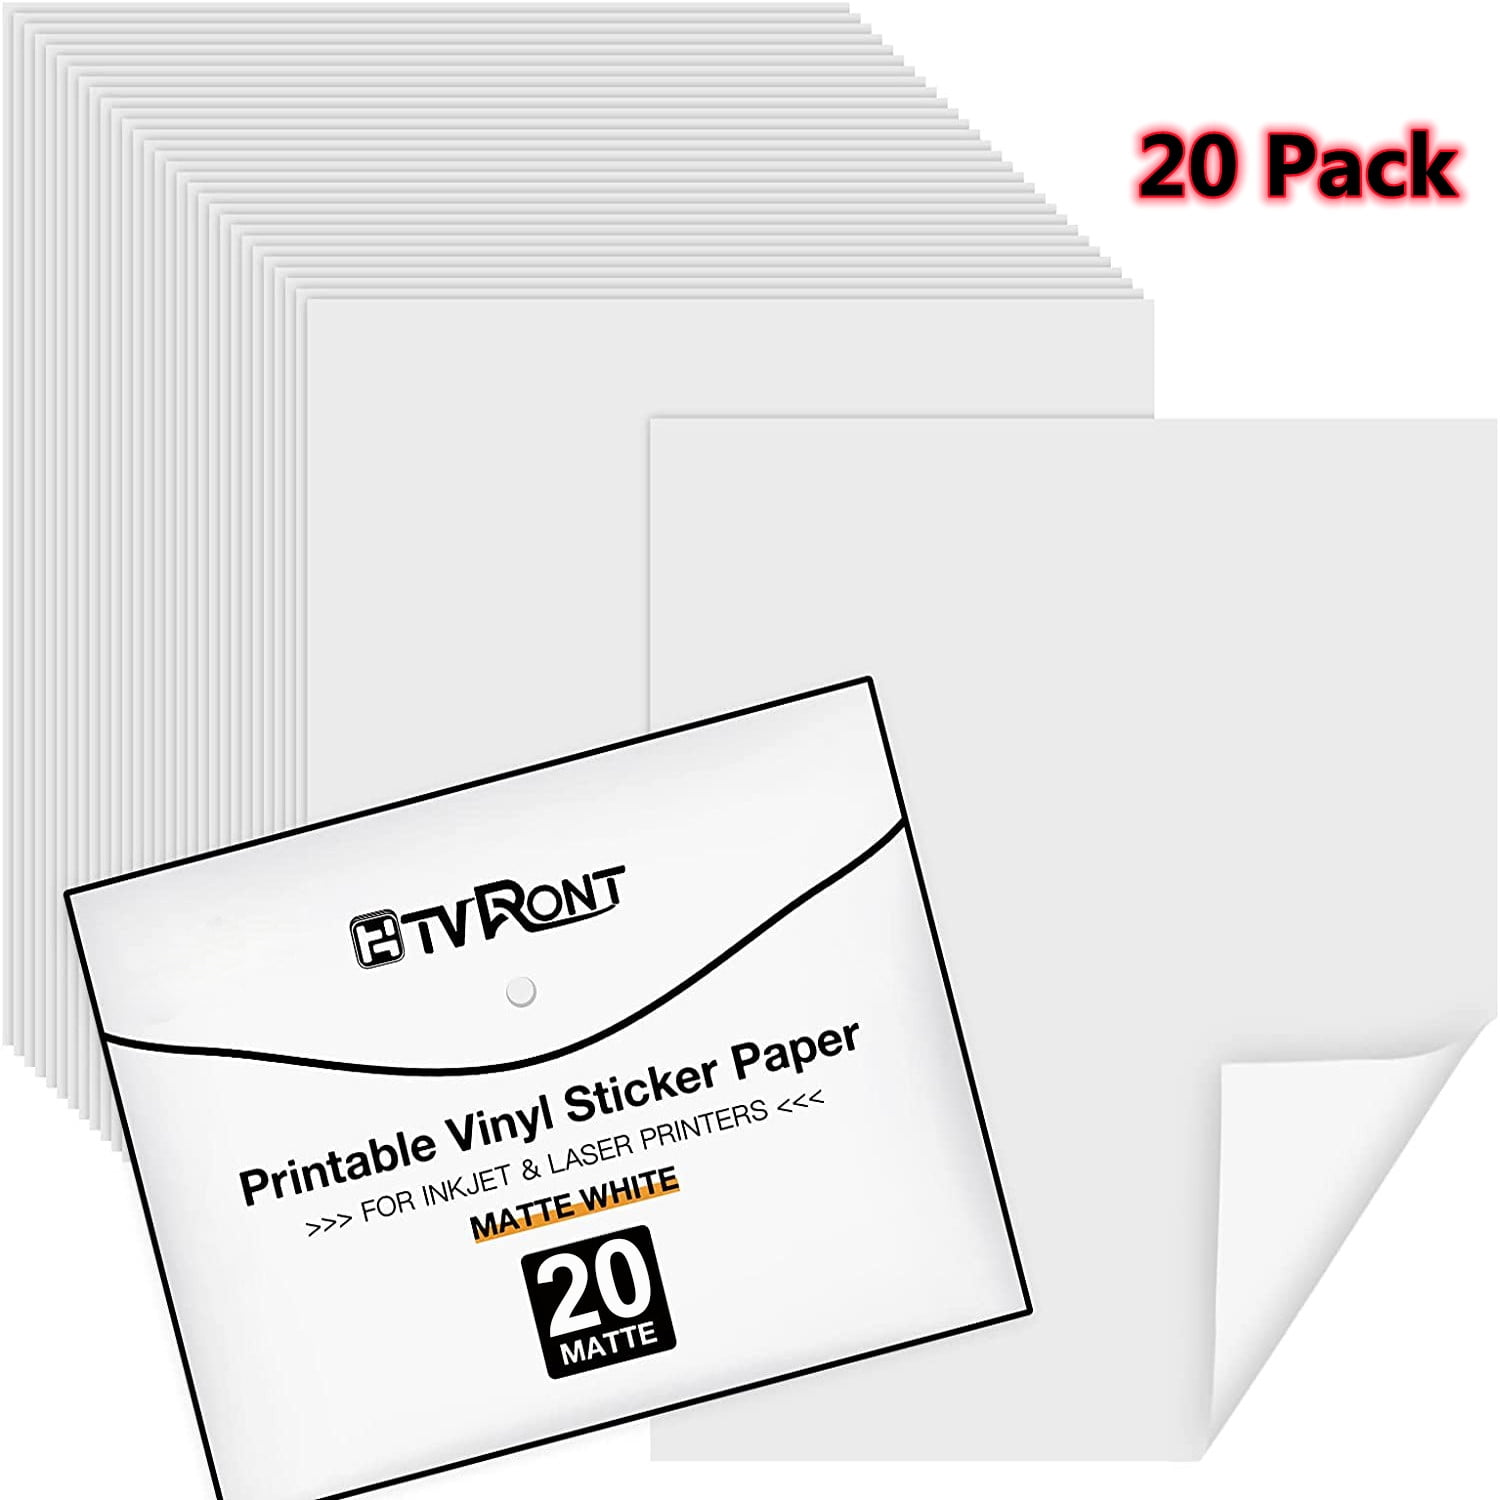 Standard Letter Size 8.5x11 30 Pack Printable Vinyl Sticker Paper Glossy White Printable Vinyl for Inkjet & Laser Printer 